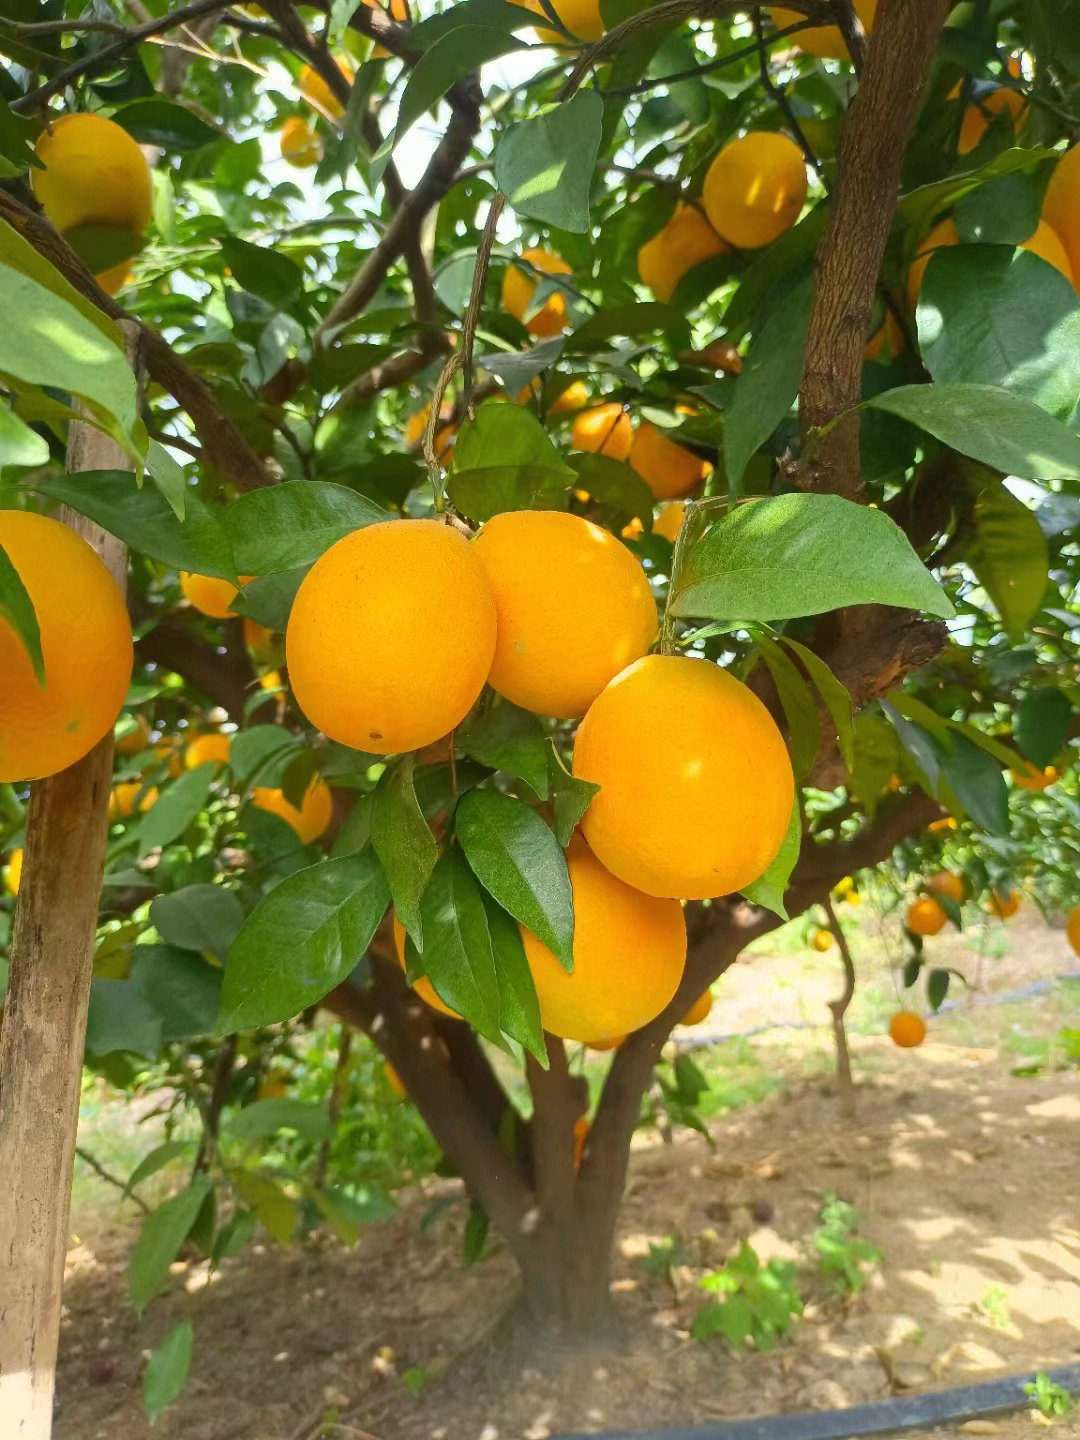 舅舅家自己种的橙子92纯天然绿色食品,保证不打甜蜜素,但是却有酸酸